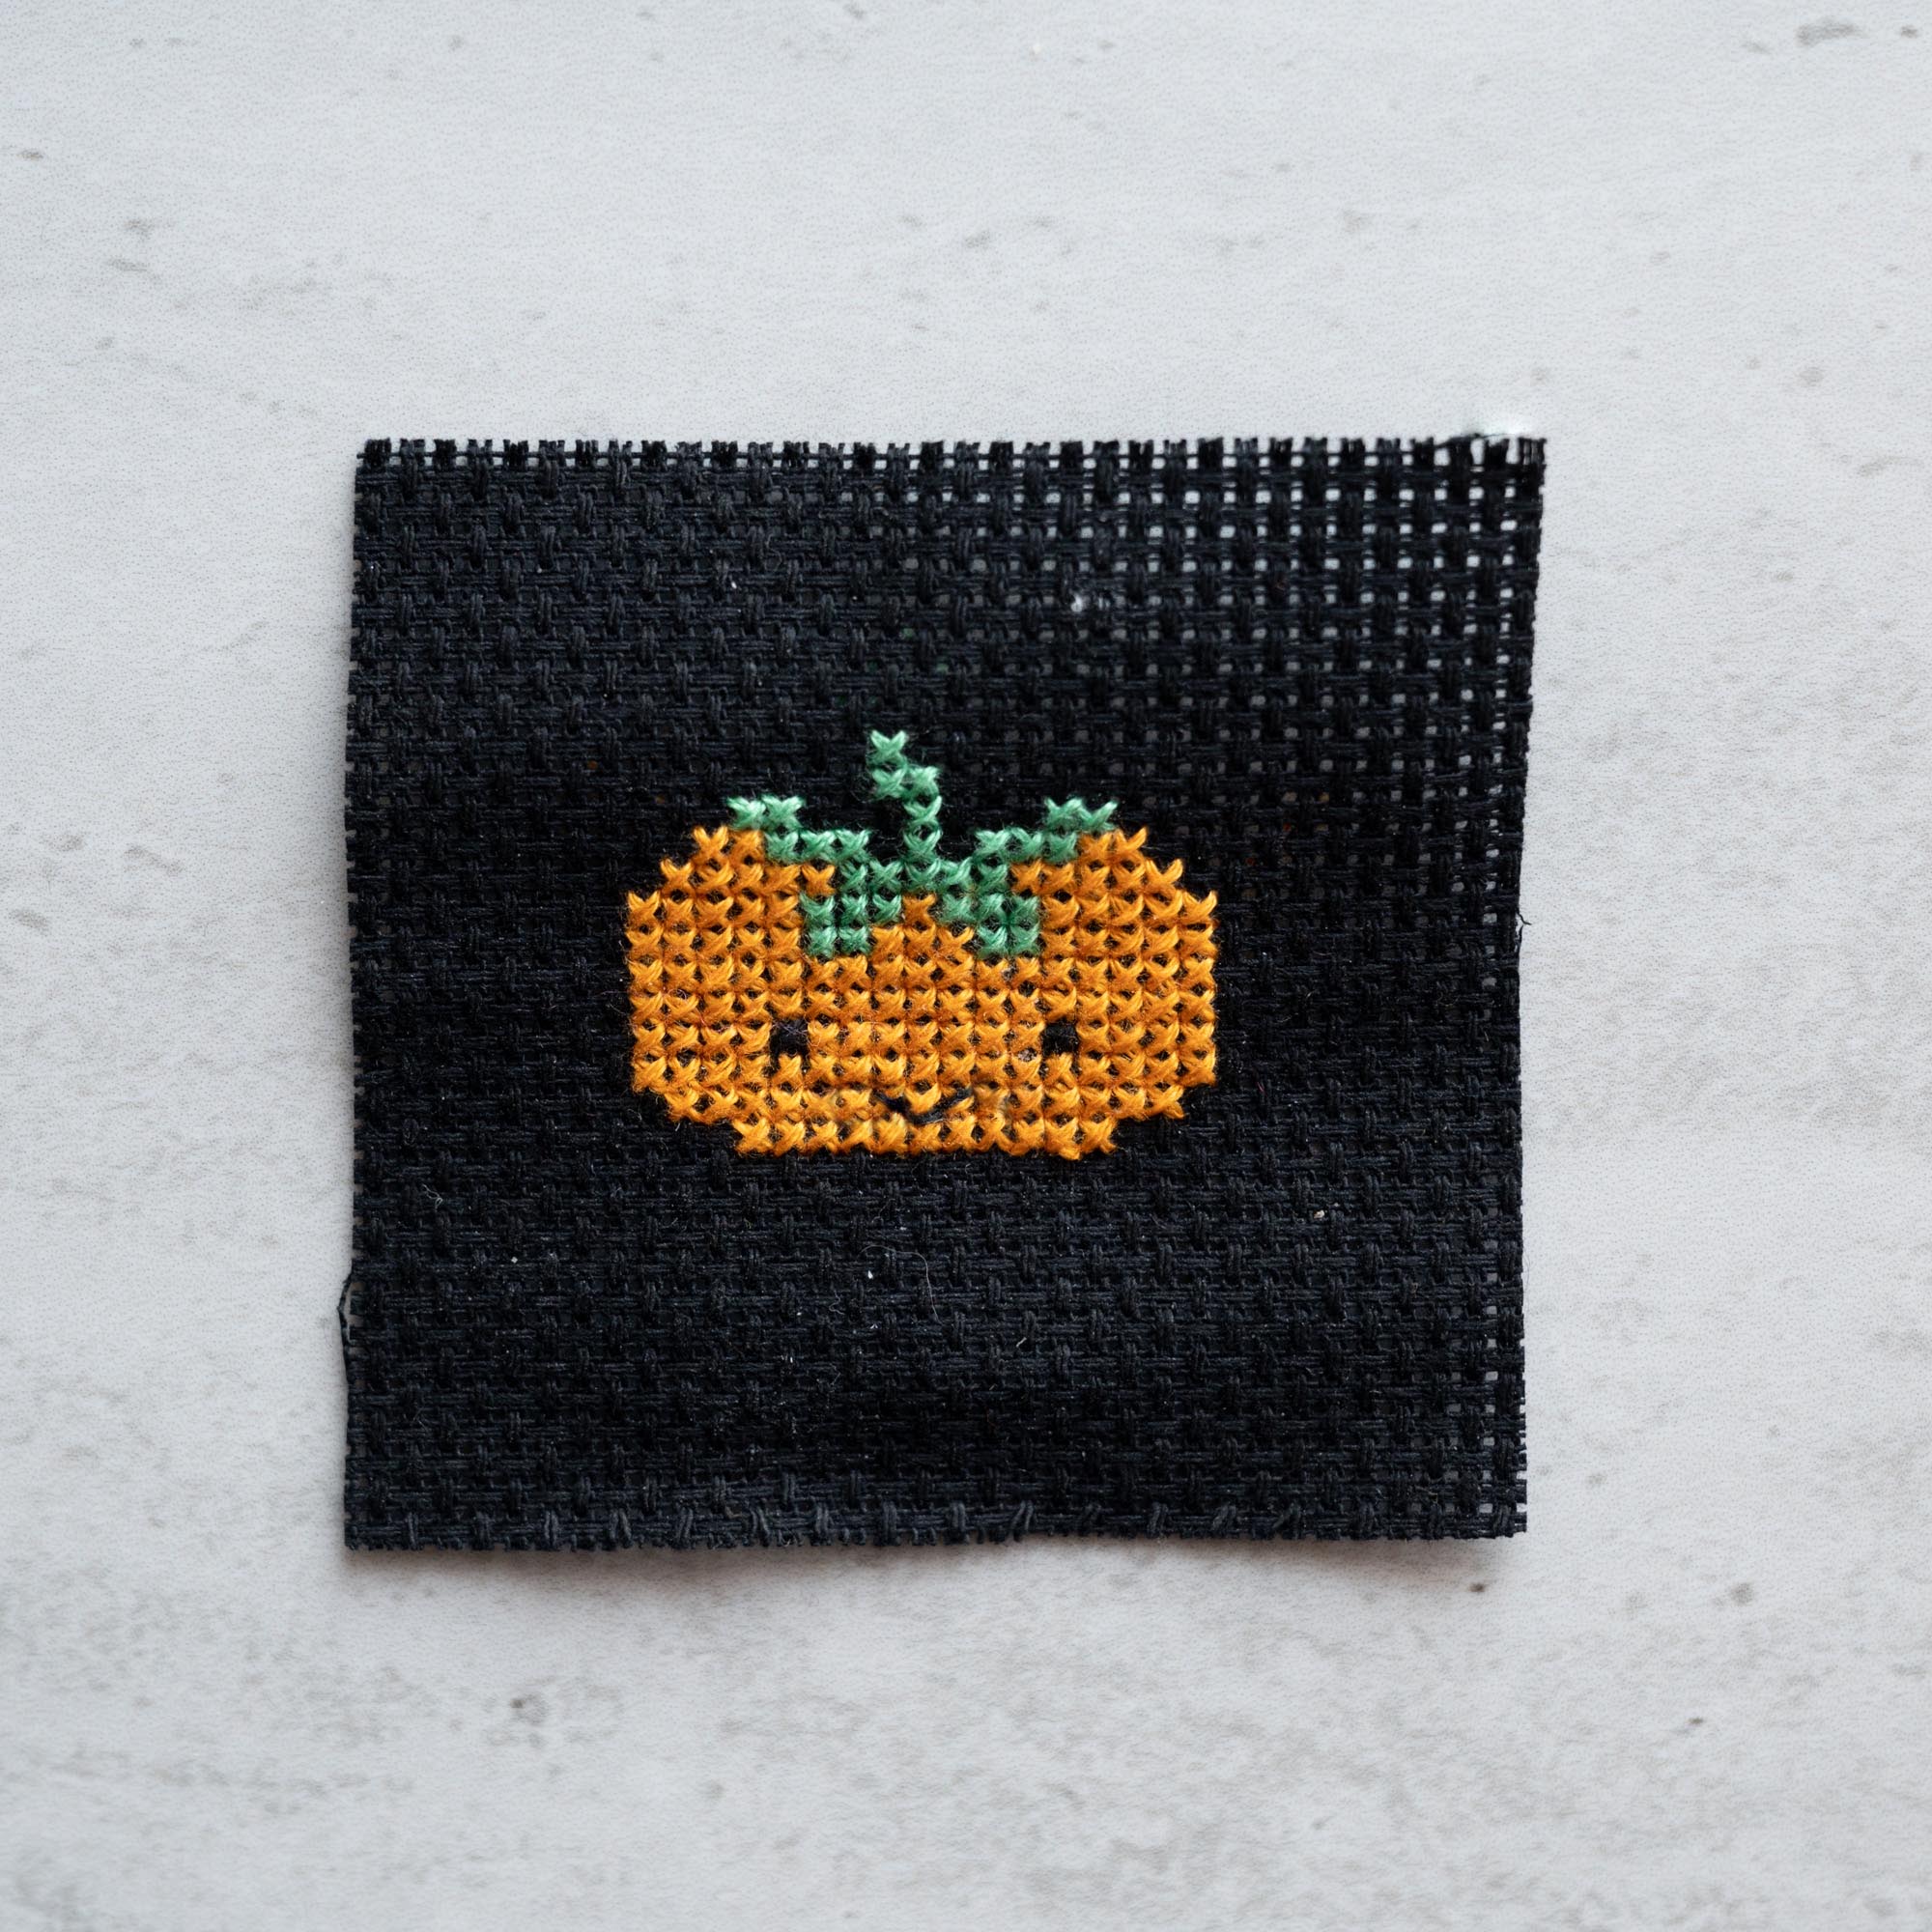 Mini Cross Stitch Kit With Kawaii Halloween Pumpkin In A Matchbox